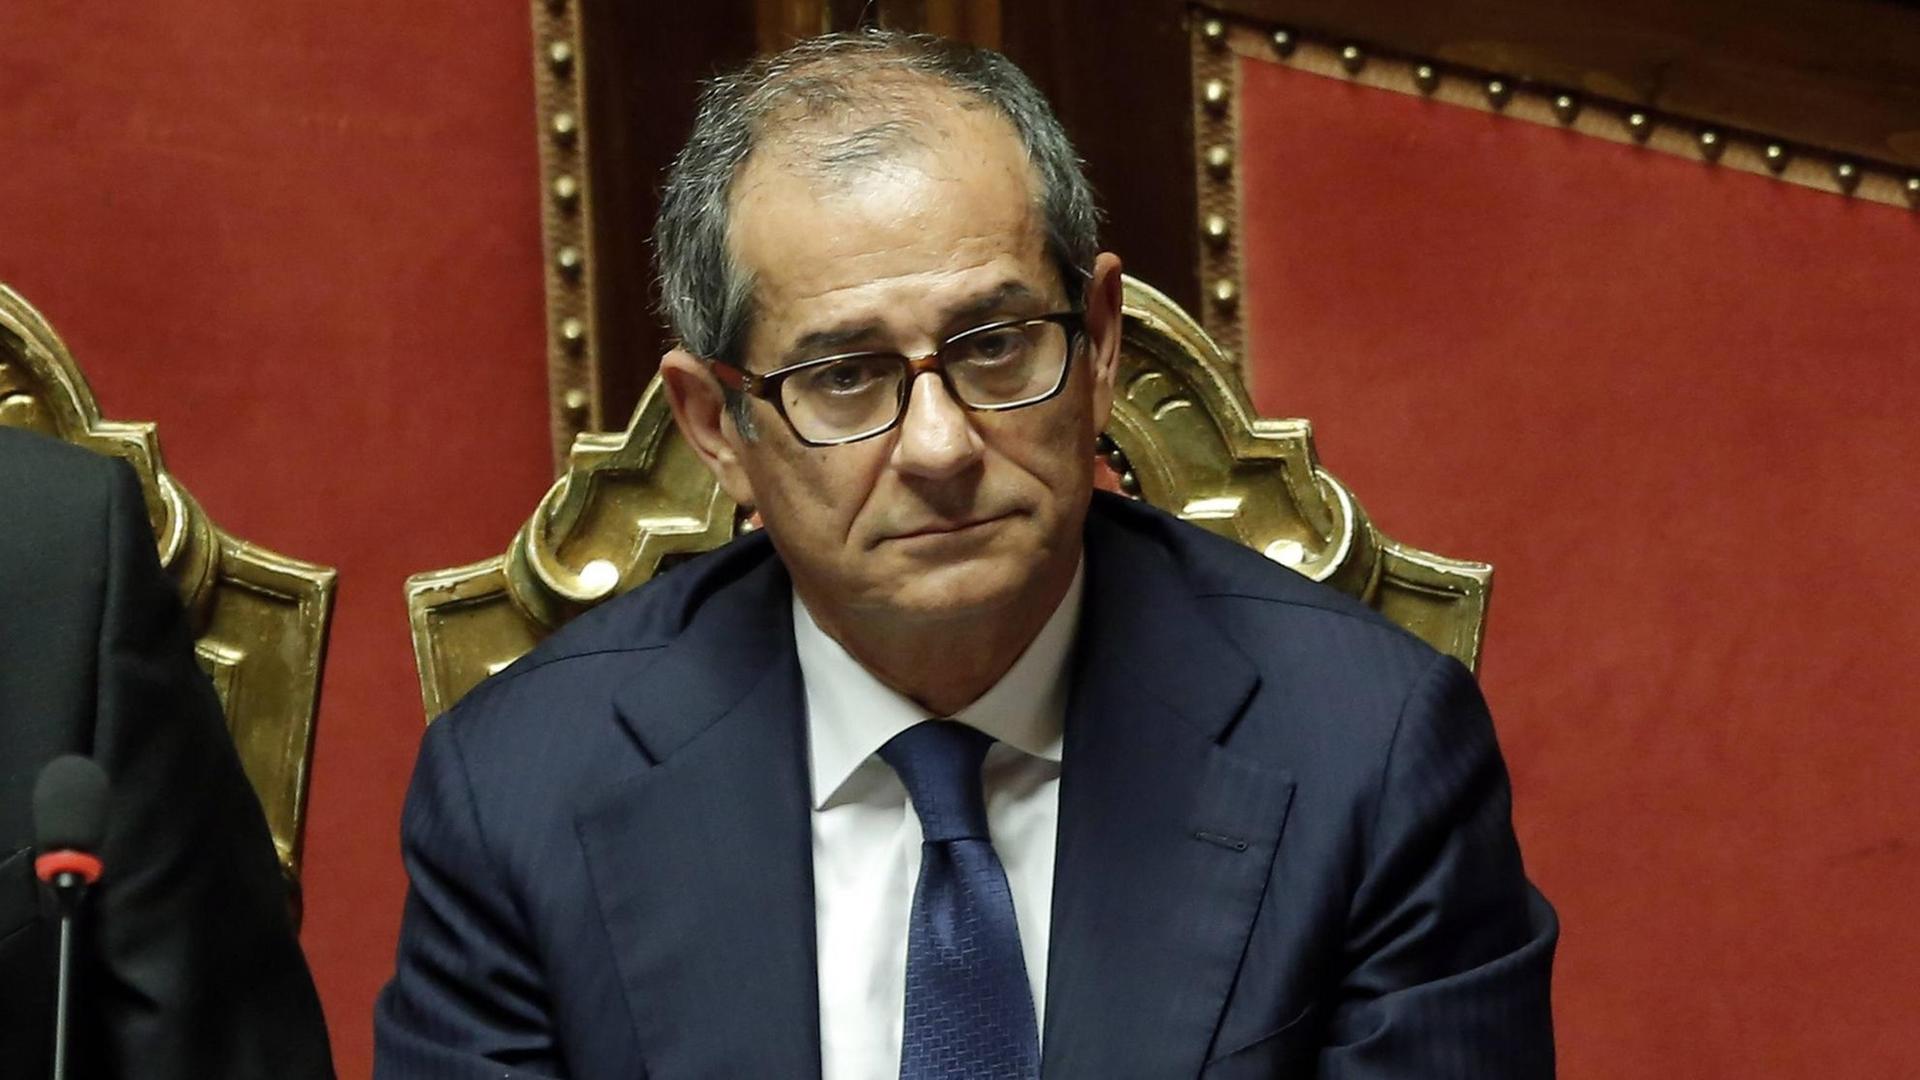 Giovanni Tria, der neue italienische Wirtschaftsminister, im Parlament am 05.06.2018